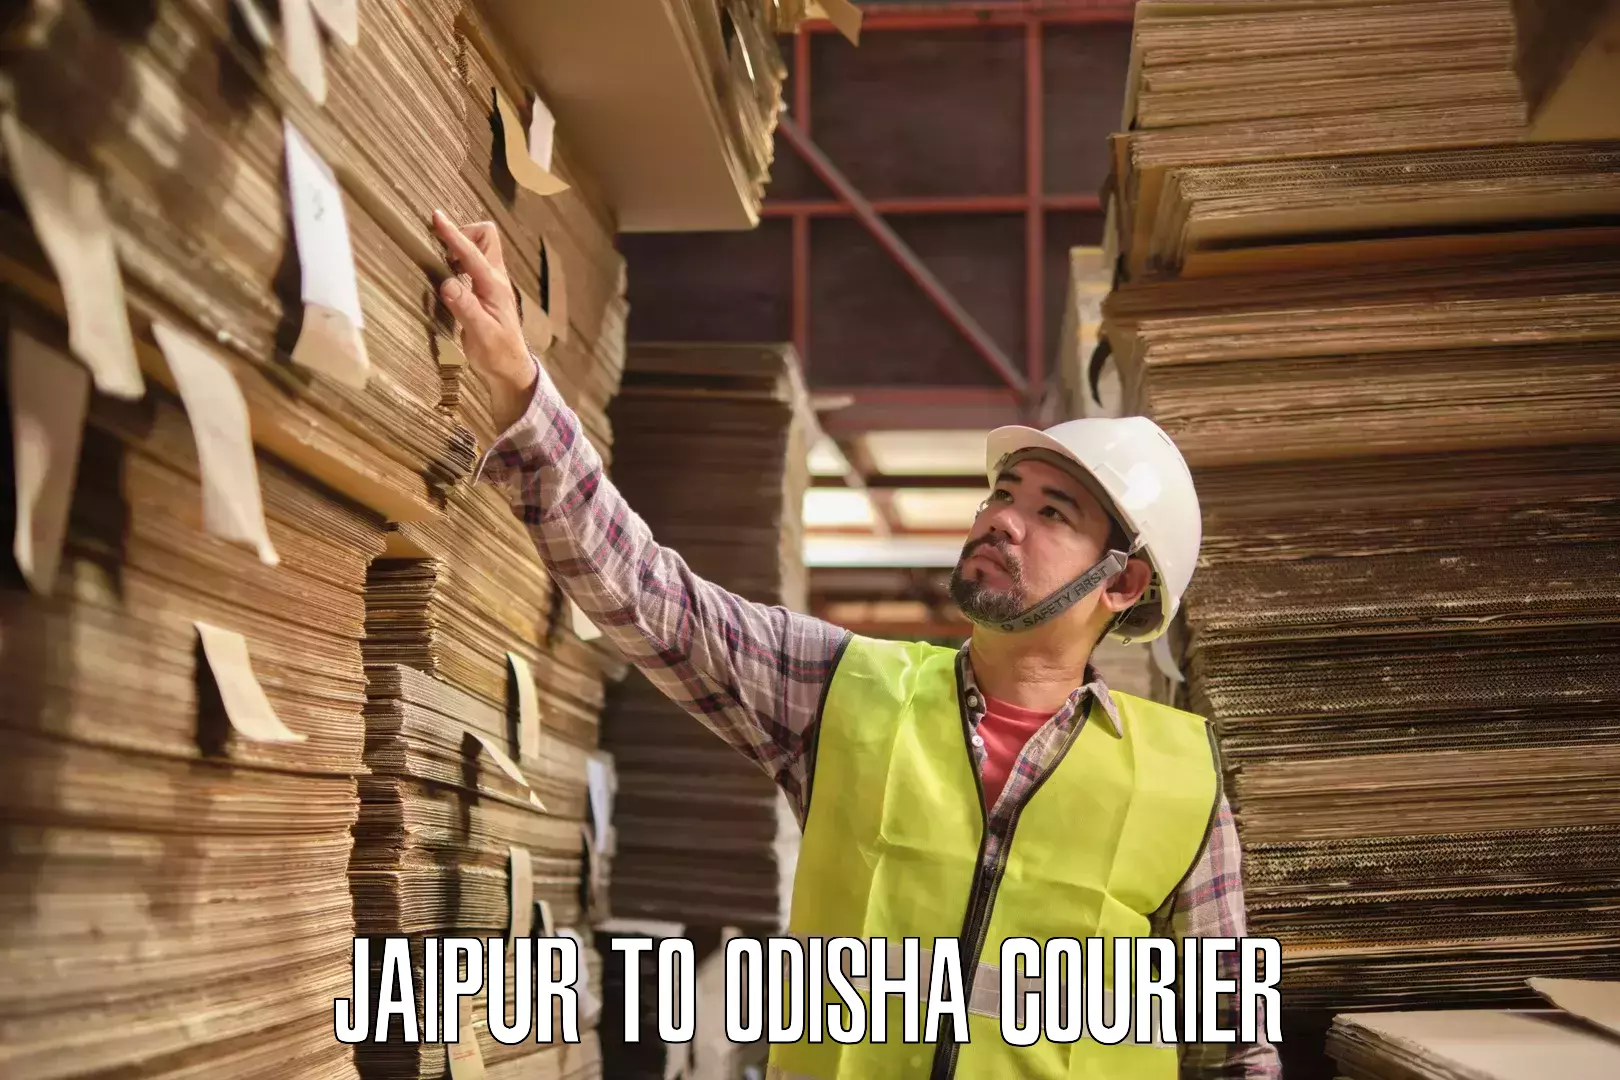 Courier service partnerships Jaipur to Balikuda